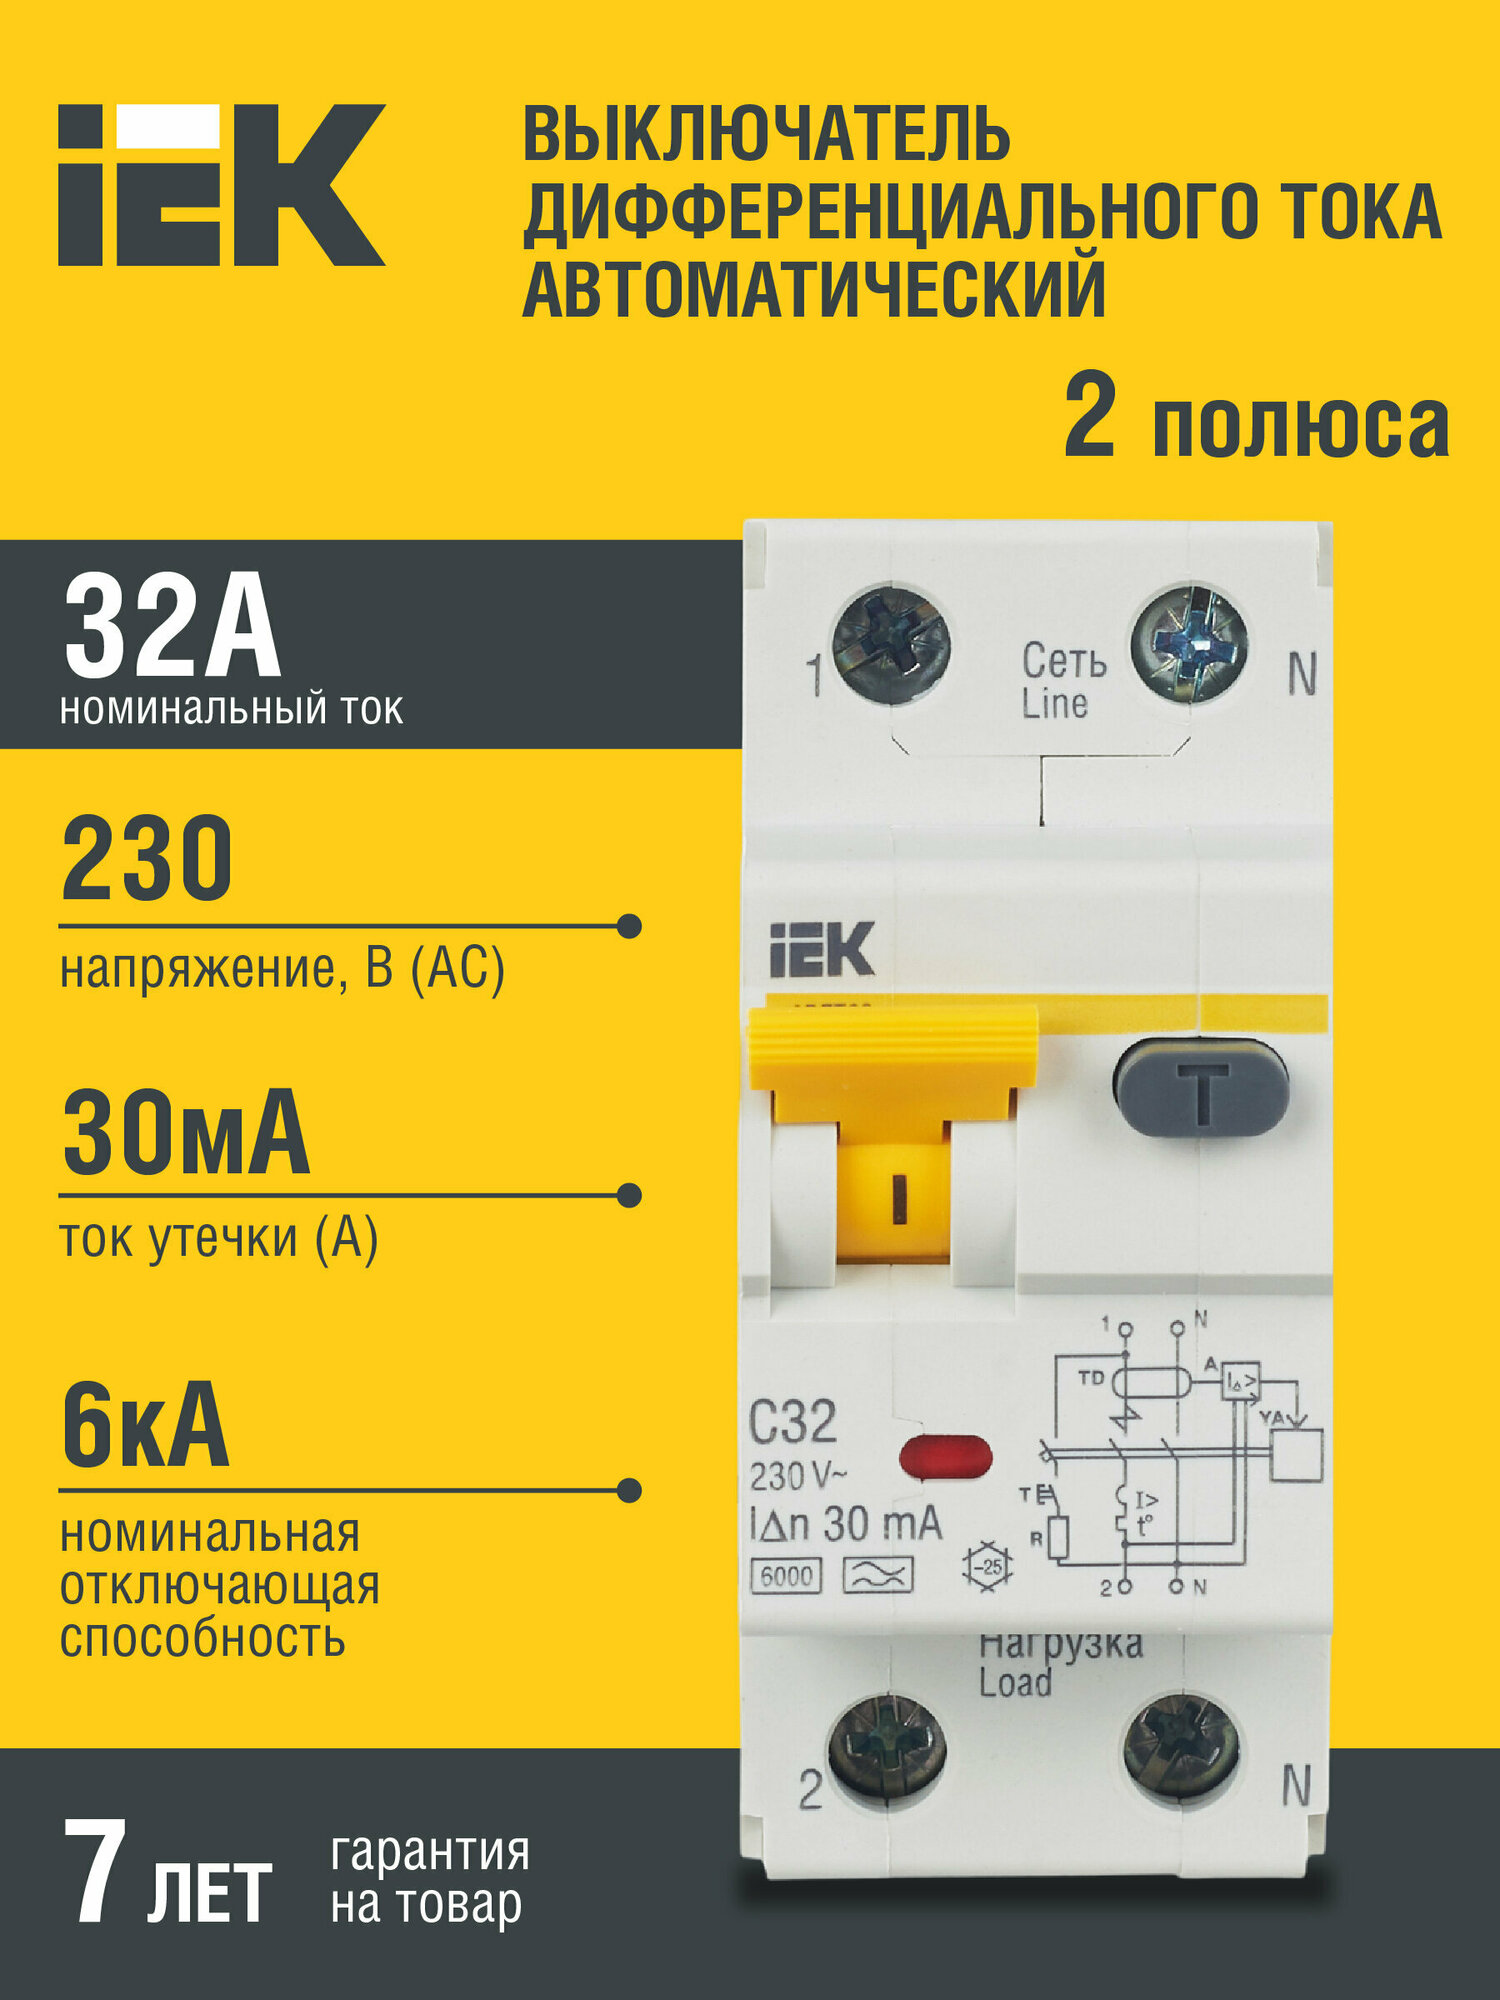 Автоматический выключатель дифференциального тока АВДТ32 C32 IEK